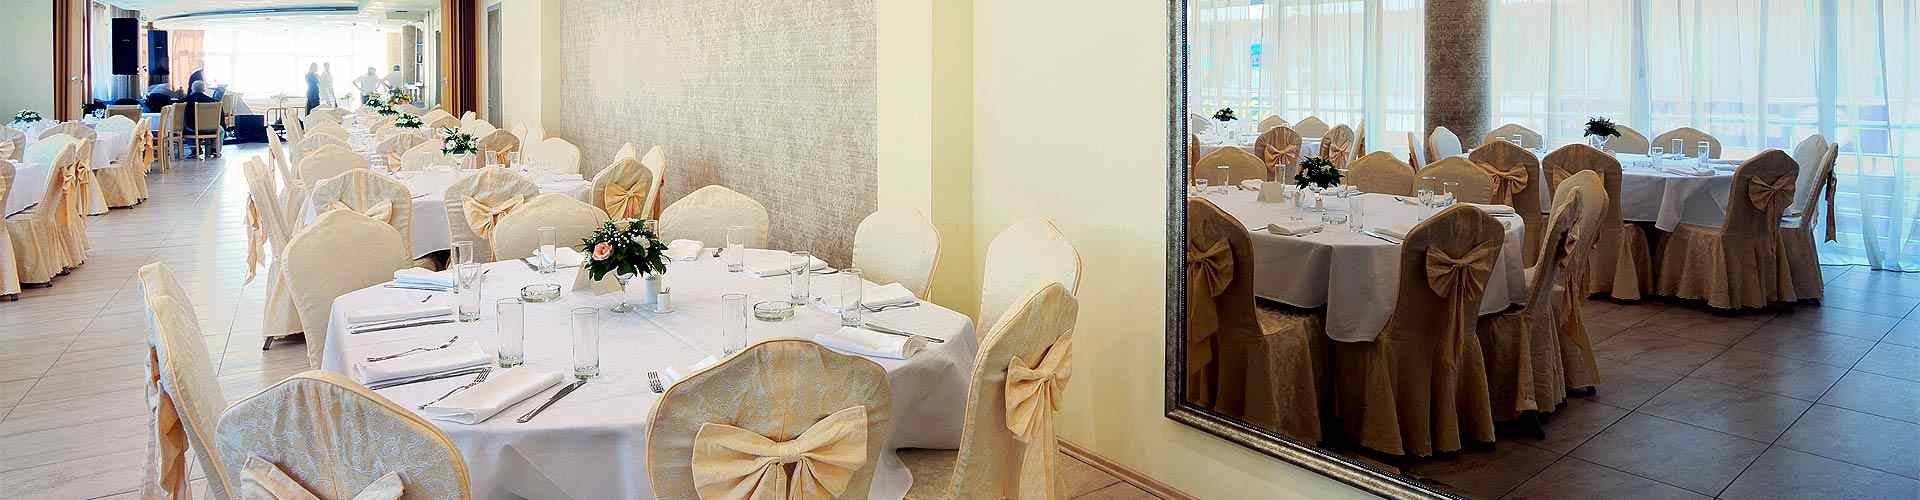 Restaurantes para bodas 2019 en Villahermosa del Río